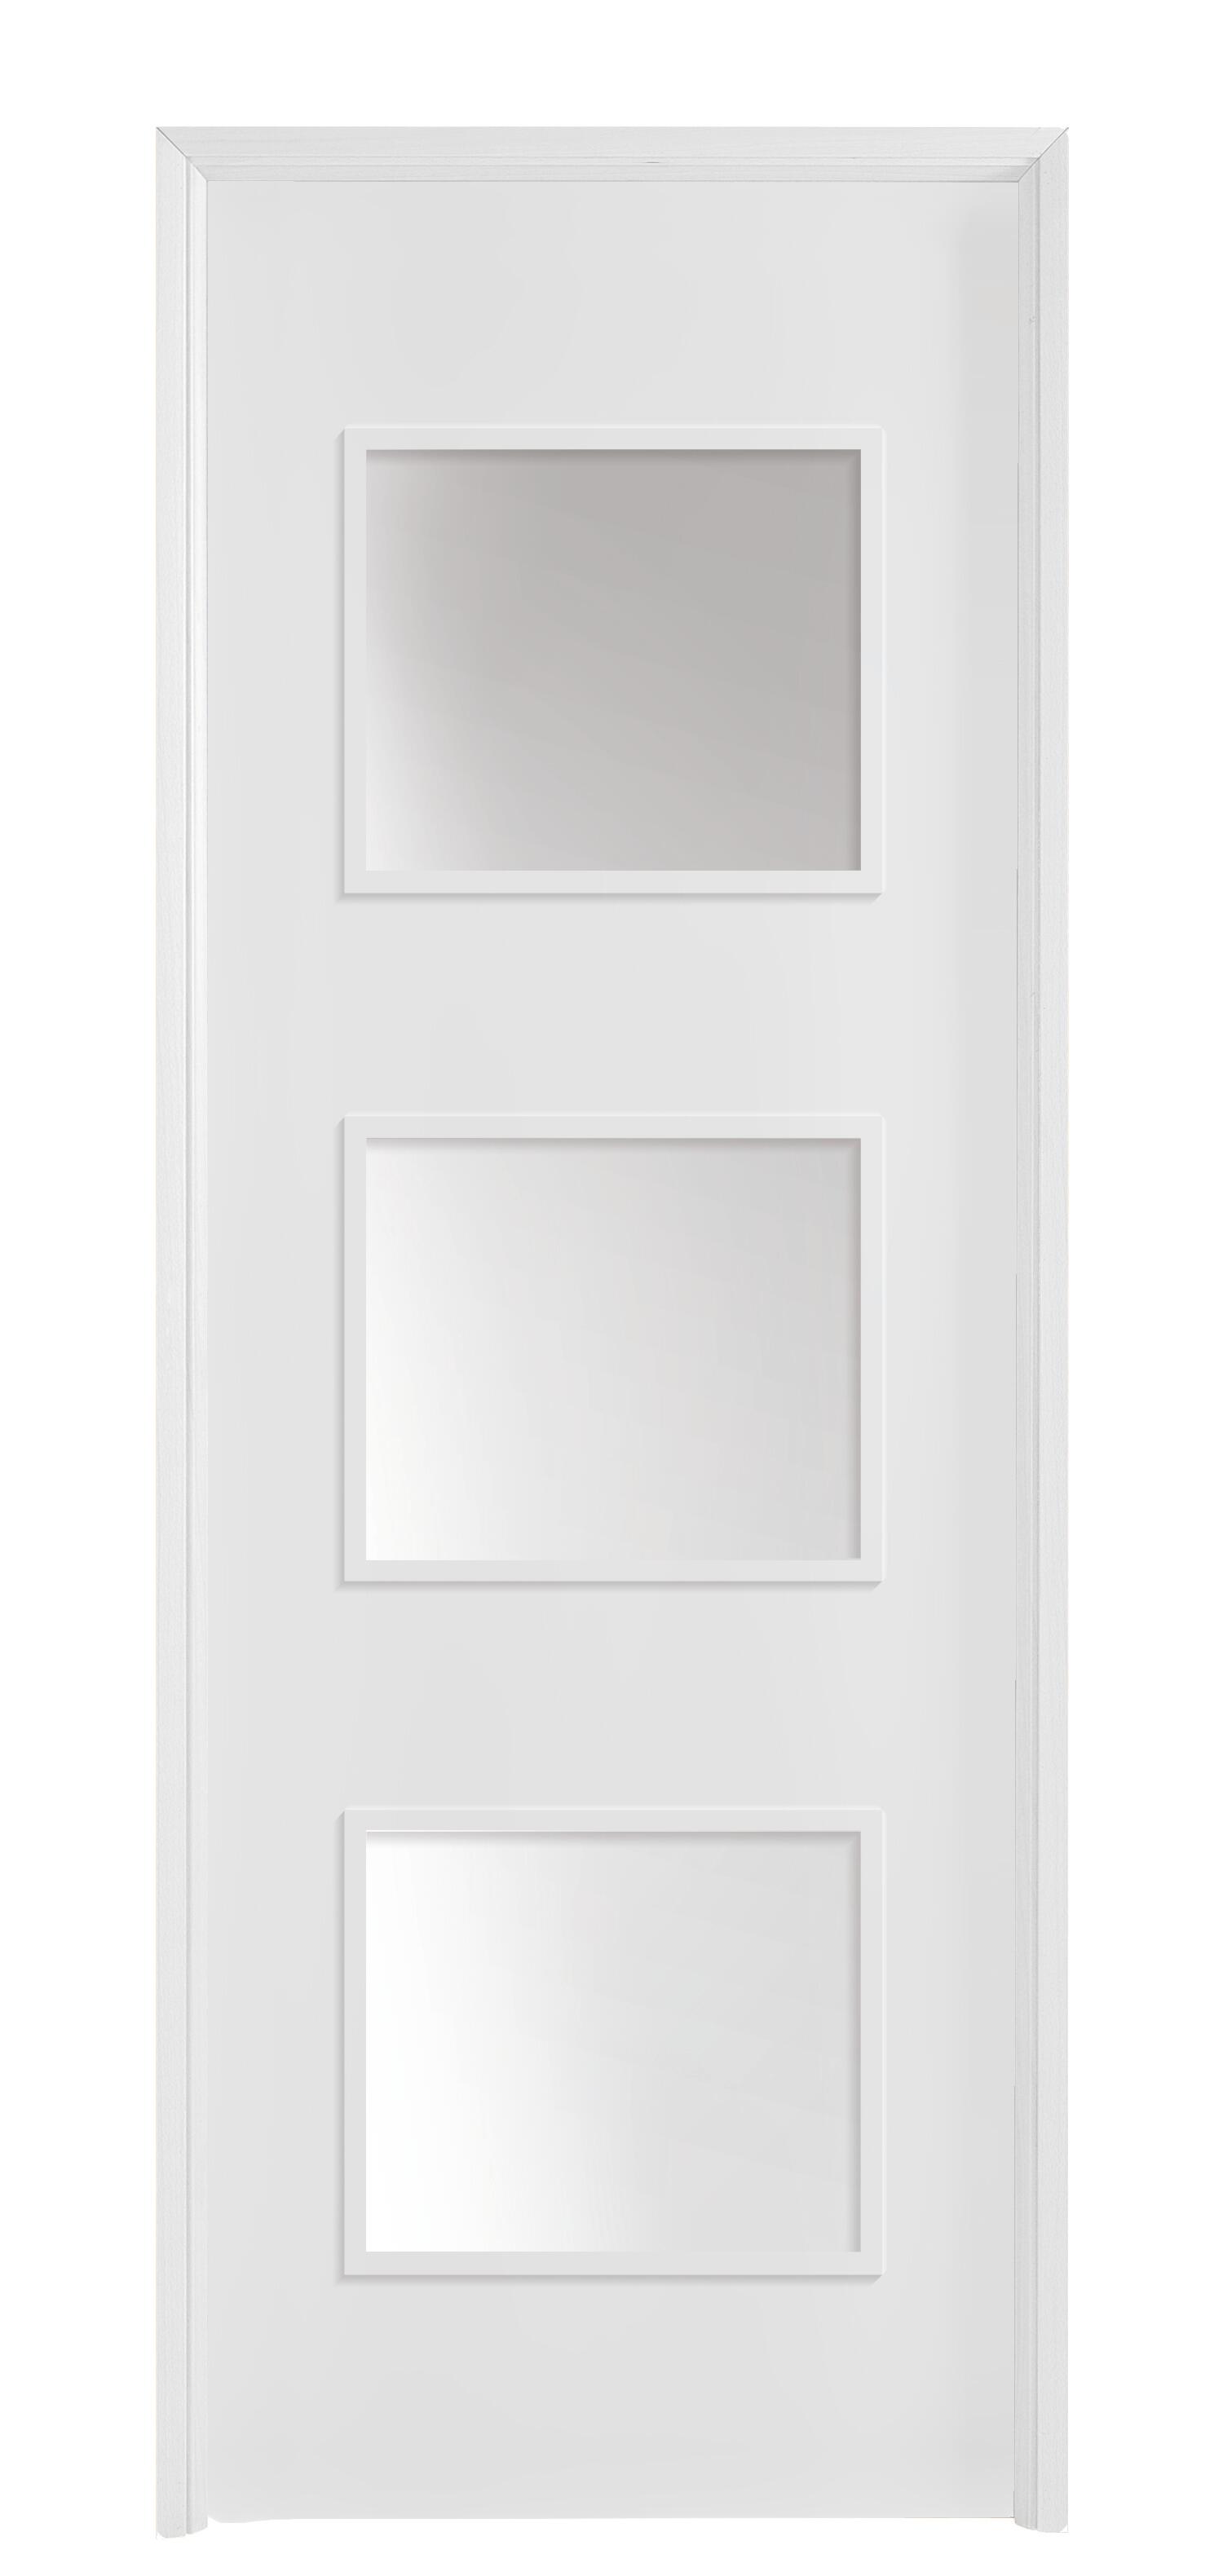 Puerta con cristal bari plus blanca 7x2x62,5 cm i